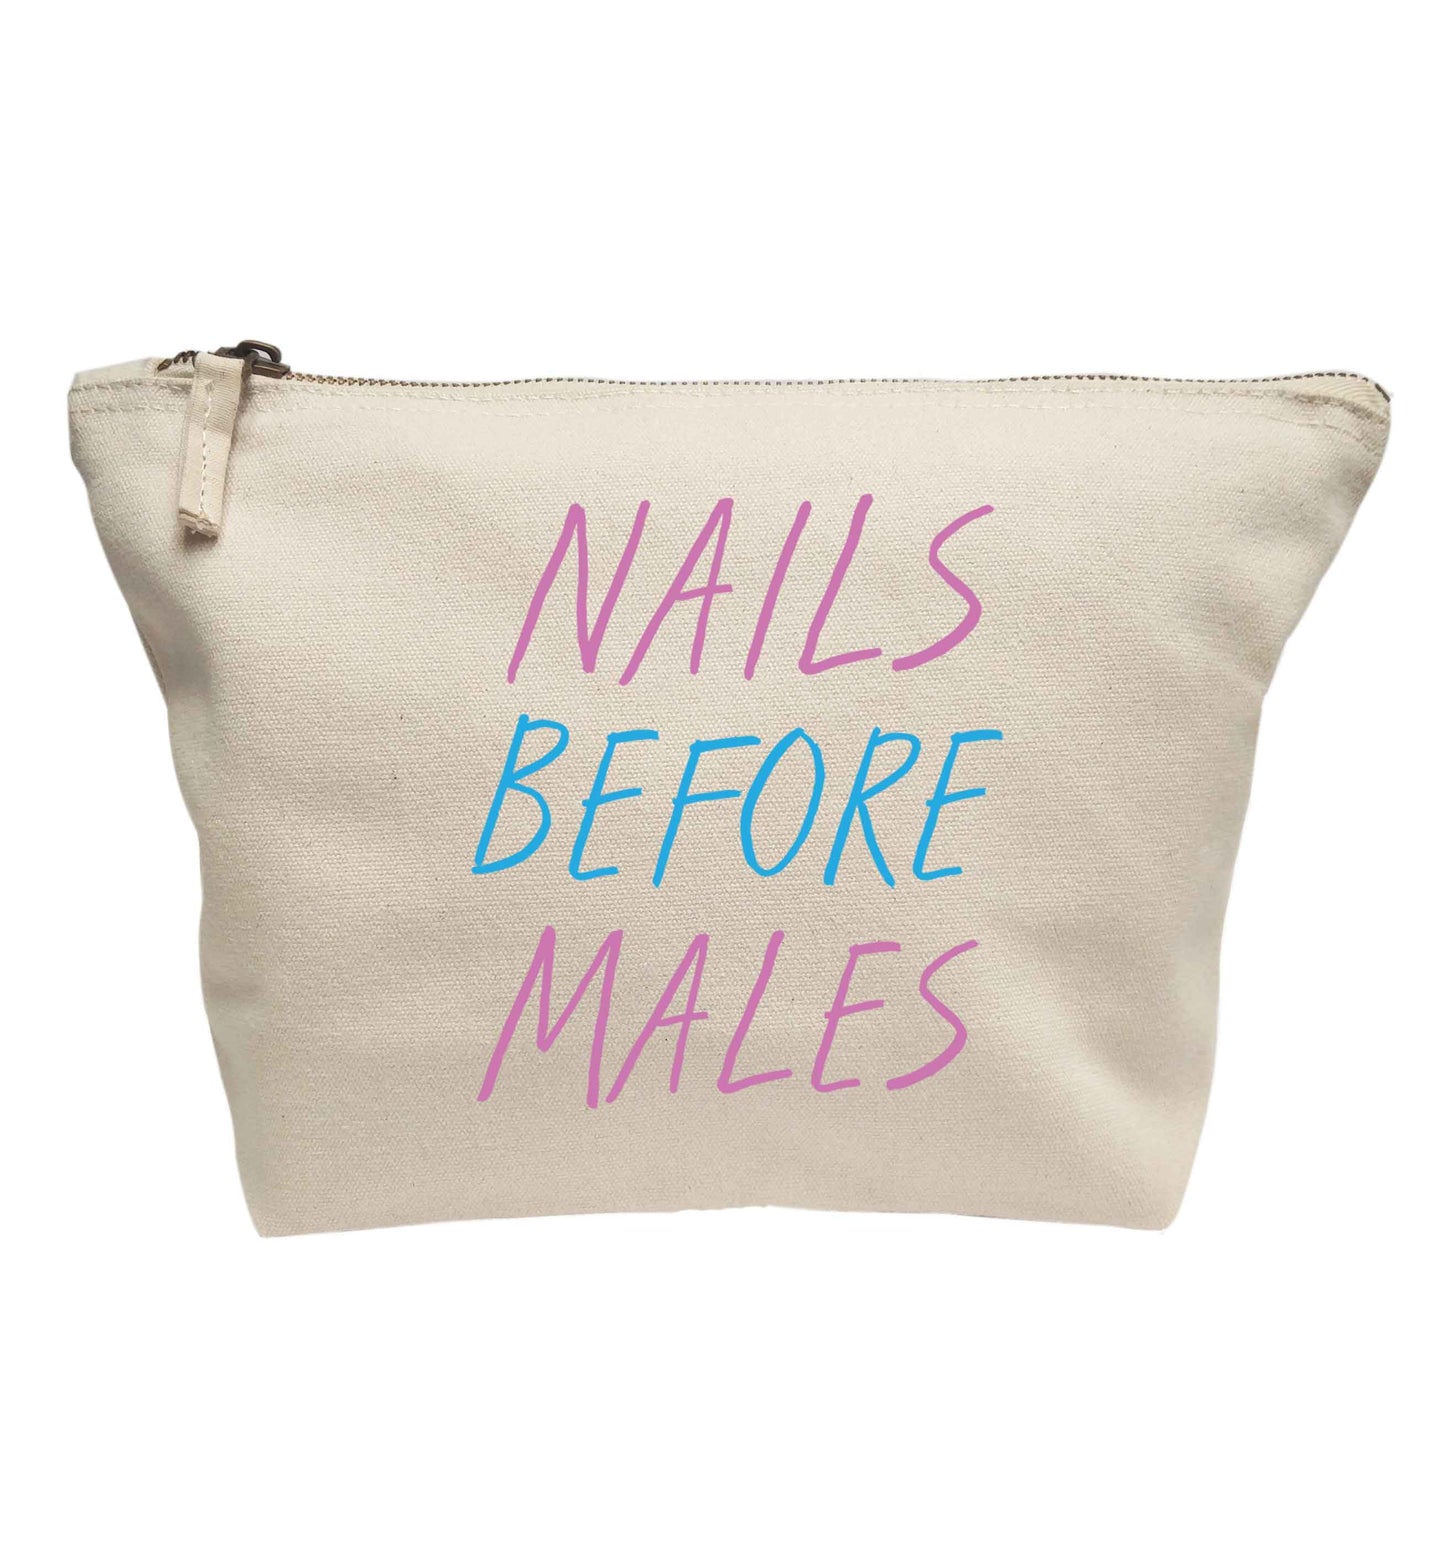 Nails before males | Makeup / wash bag